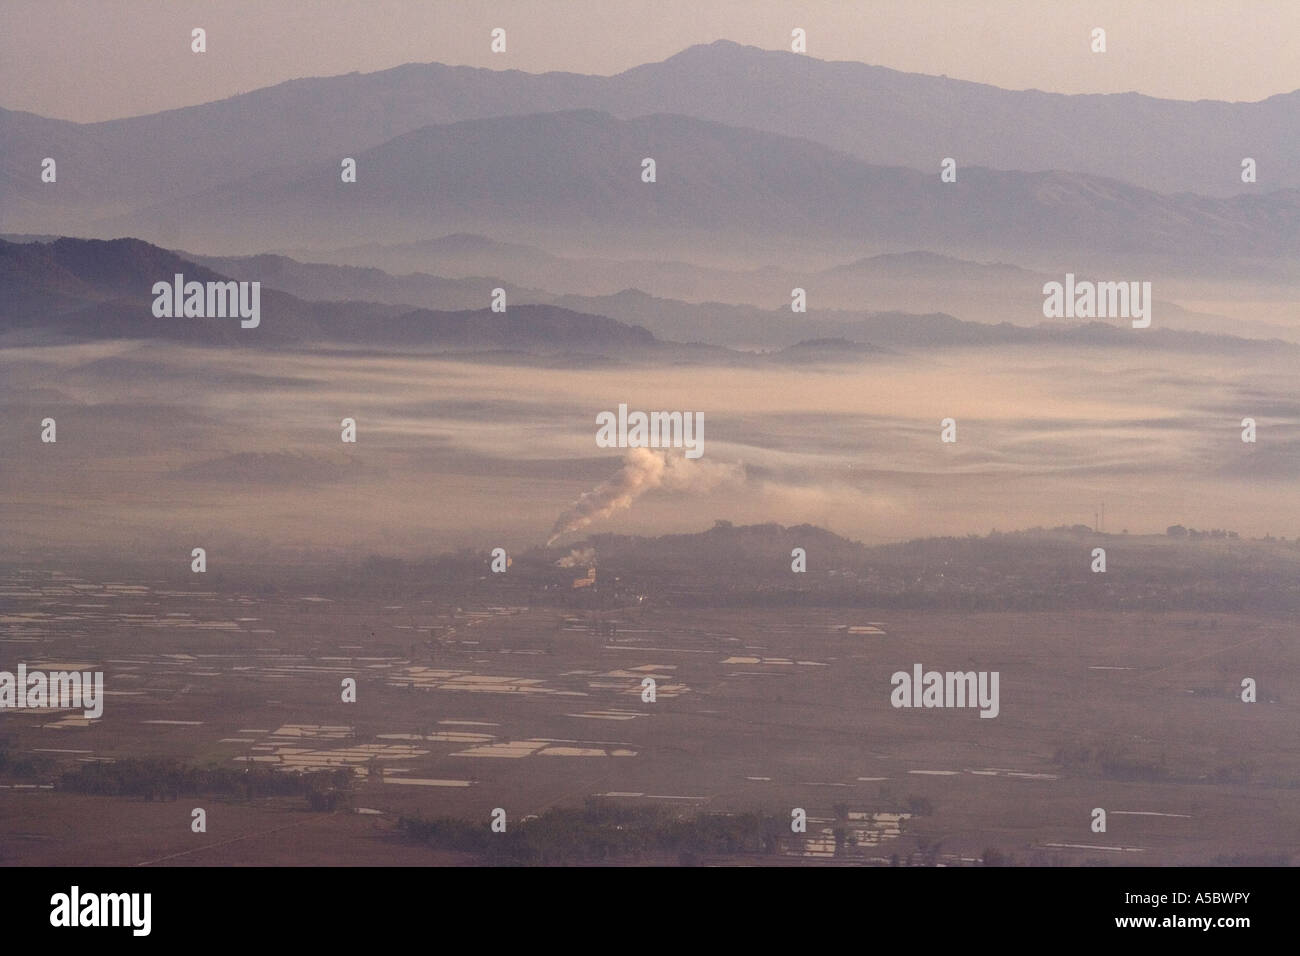 Fabrik spuckt Verschmutzung in bereits Smog gefüllt Luft Menghai Xishuangbanna China Stockfoto